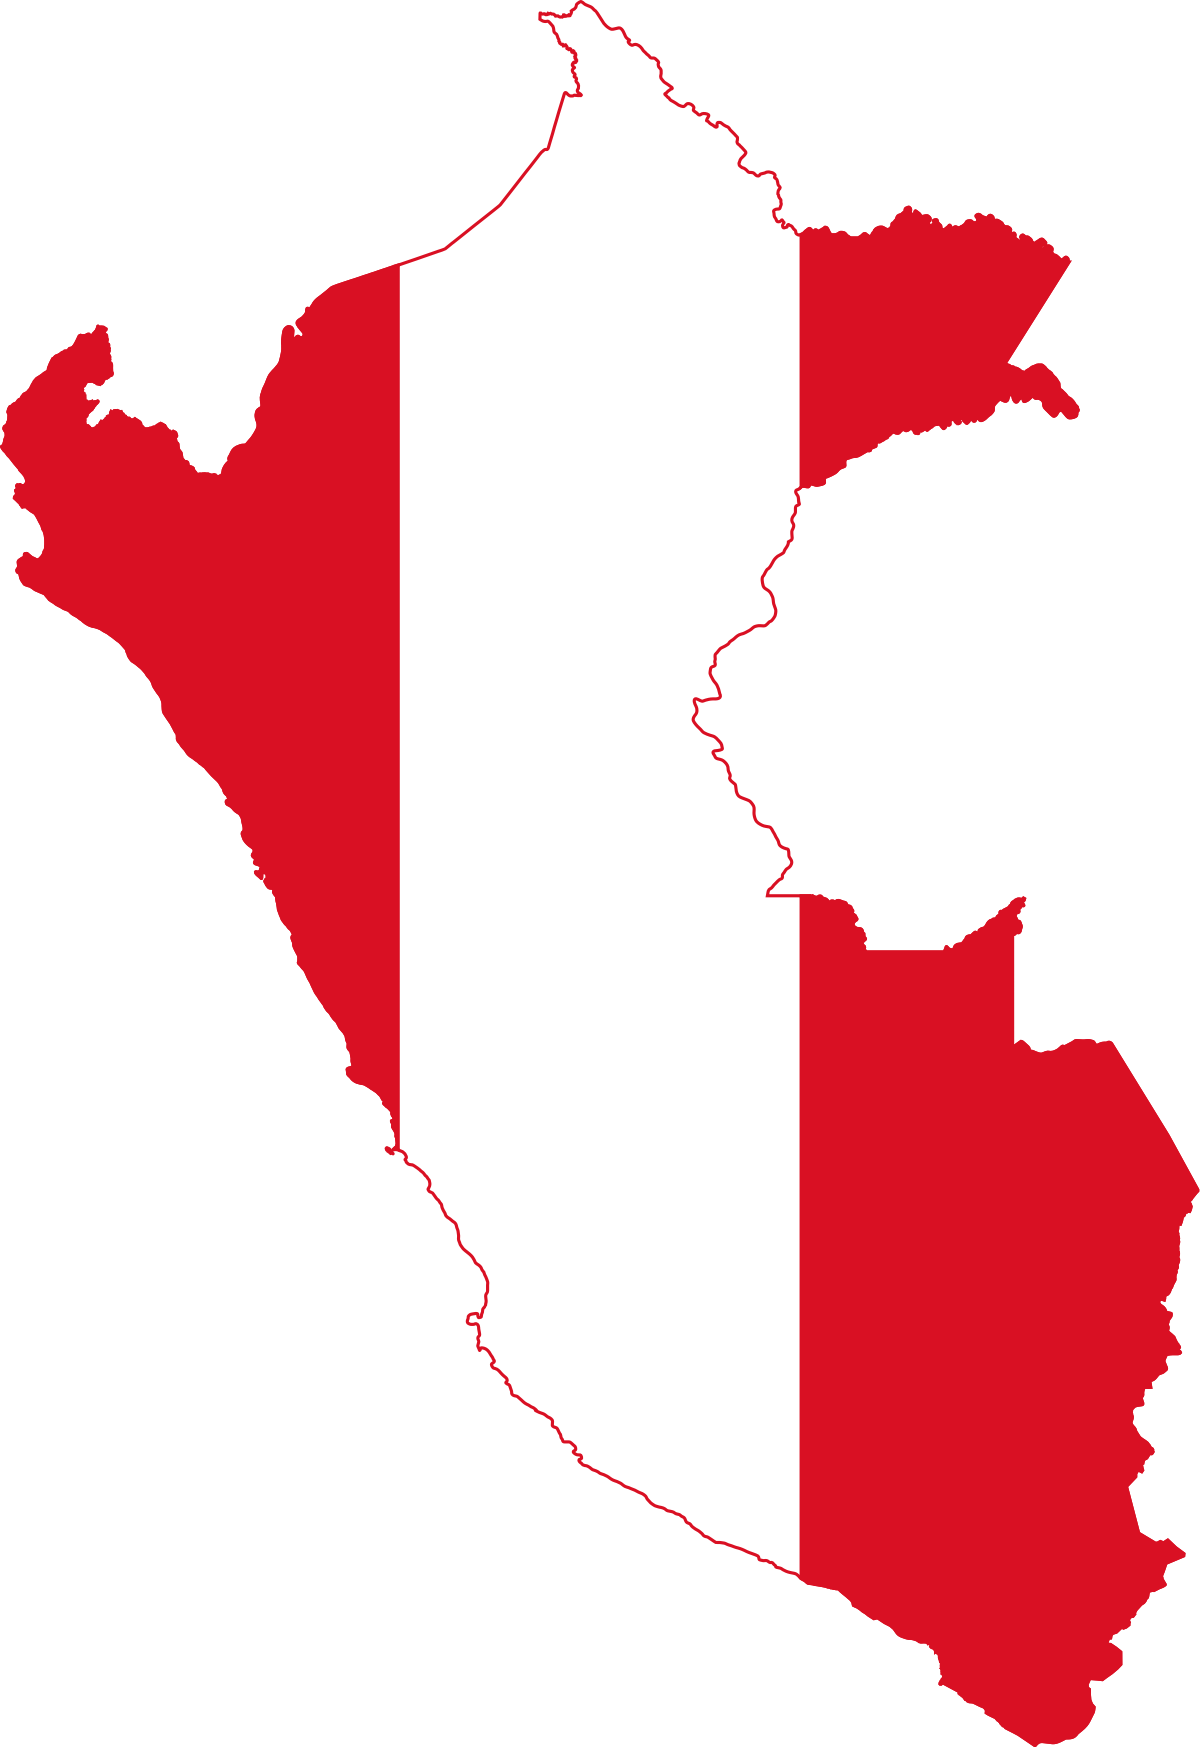 Peru Flag Transparent Background